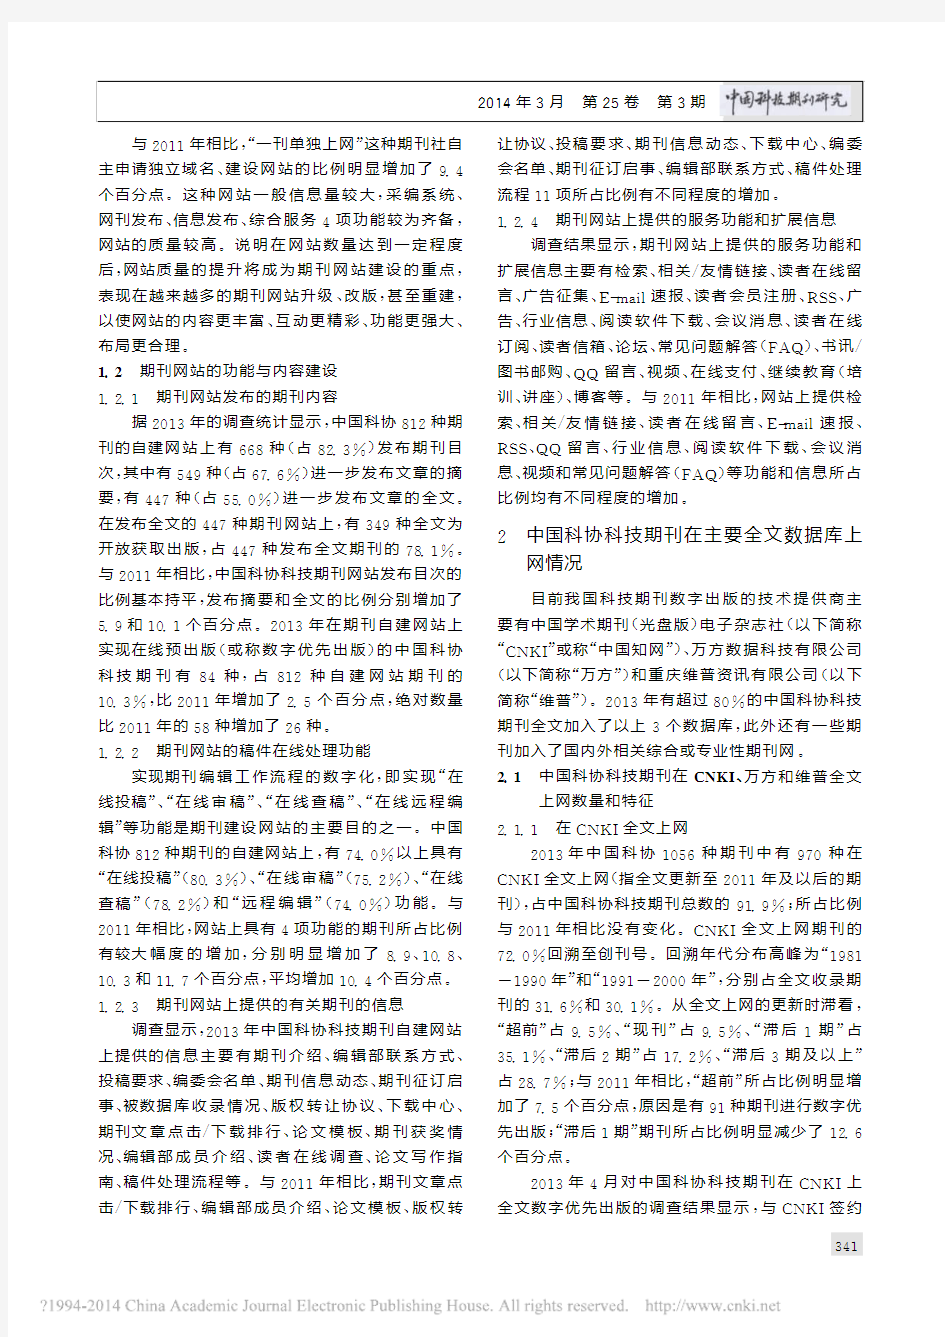 中国科协科技期刊数字出版及传播力建设_程维红